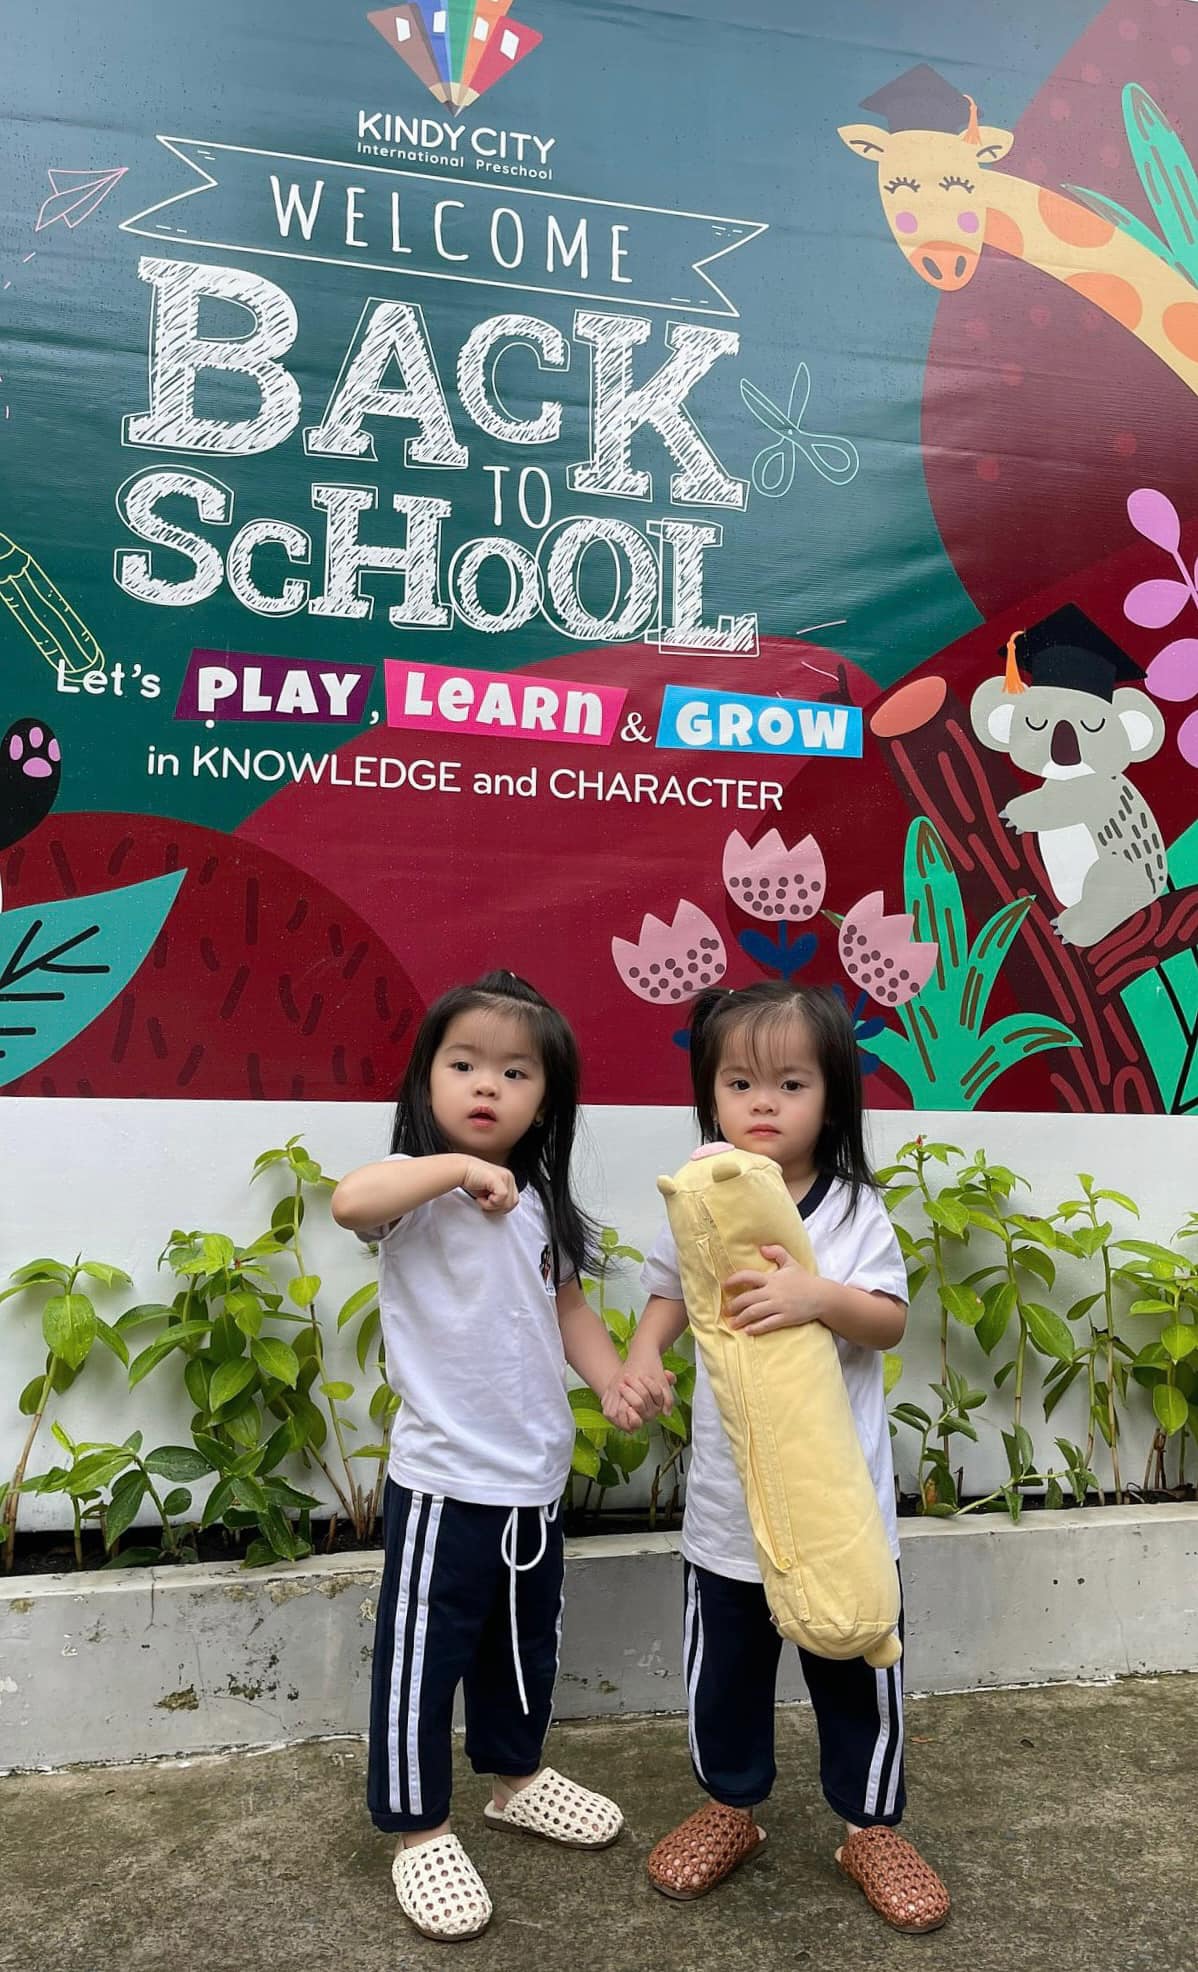 Vân Trang lựa chọn trường quốc tế gần nhà cho hai con sinh đôi, hài lòng về tính thực tế của chương trình học - Ảnh 1.